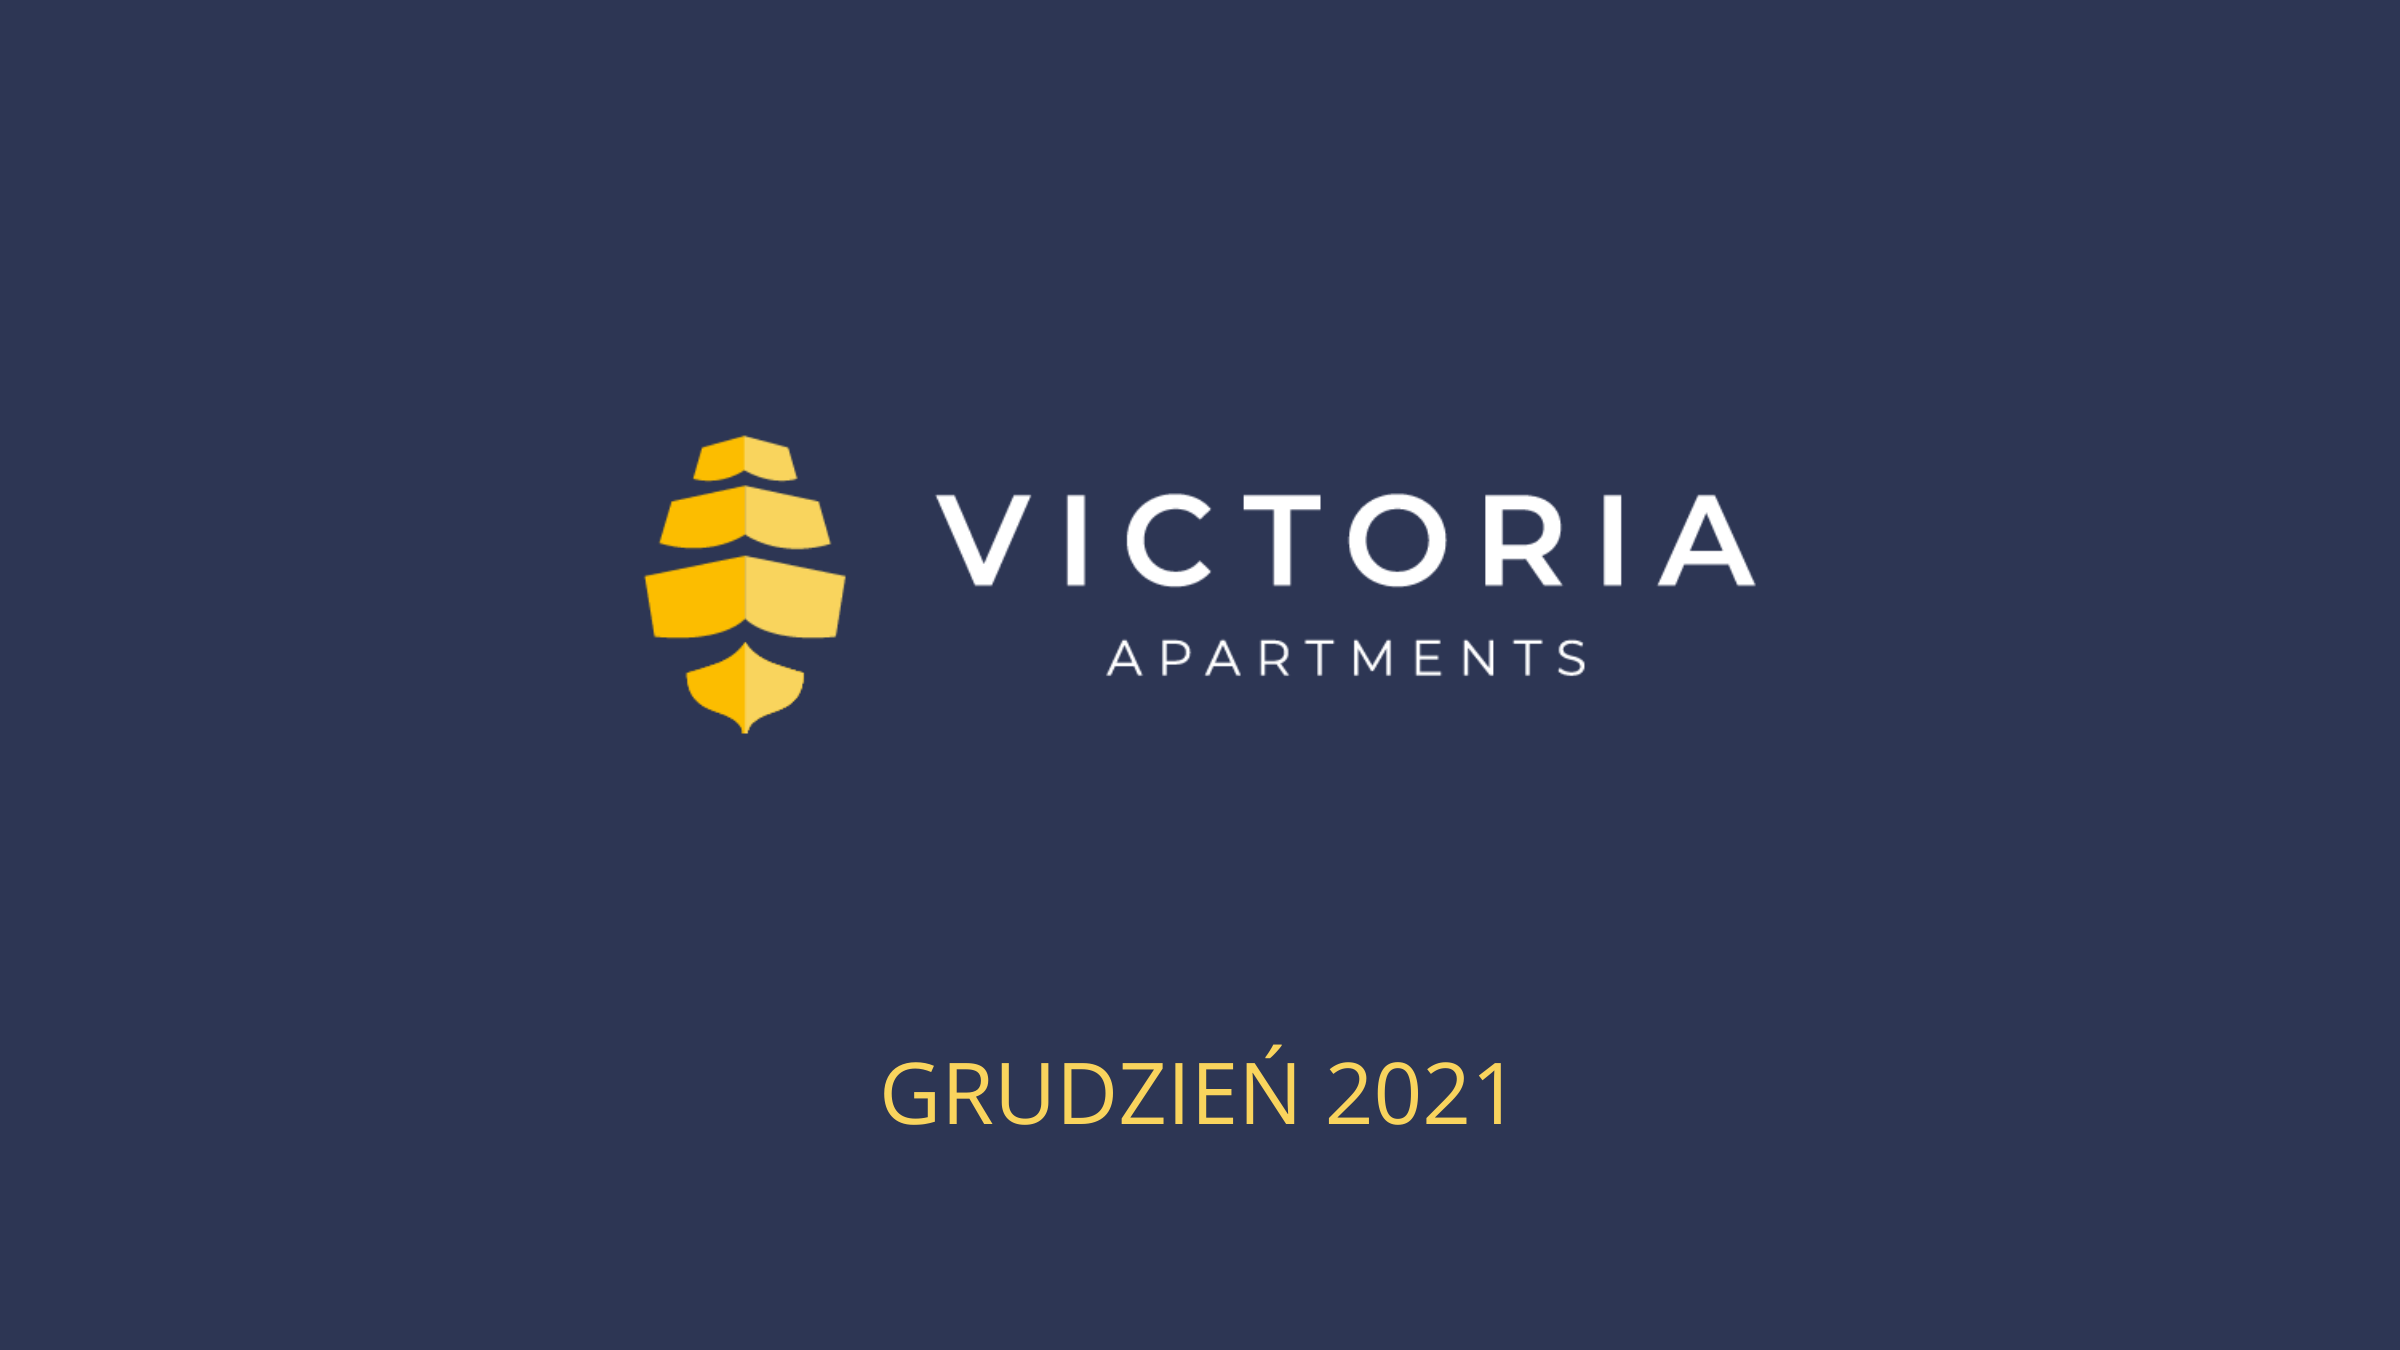 Victoria, Dziennik budowy - Victoria Apartments w Szczecinie - grudzień 2021